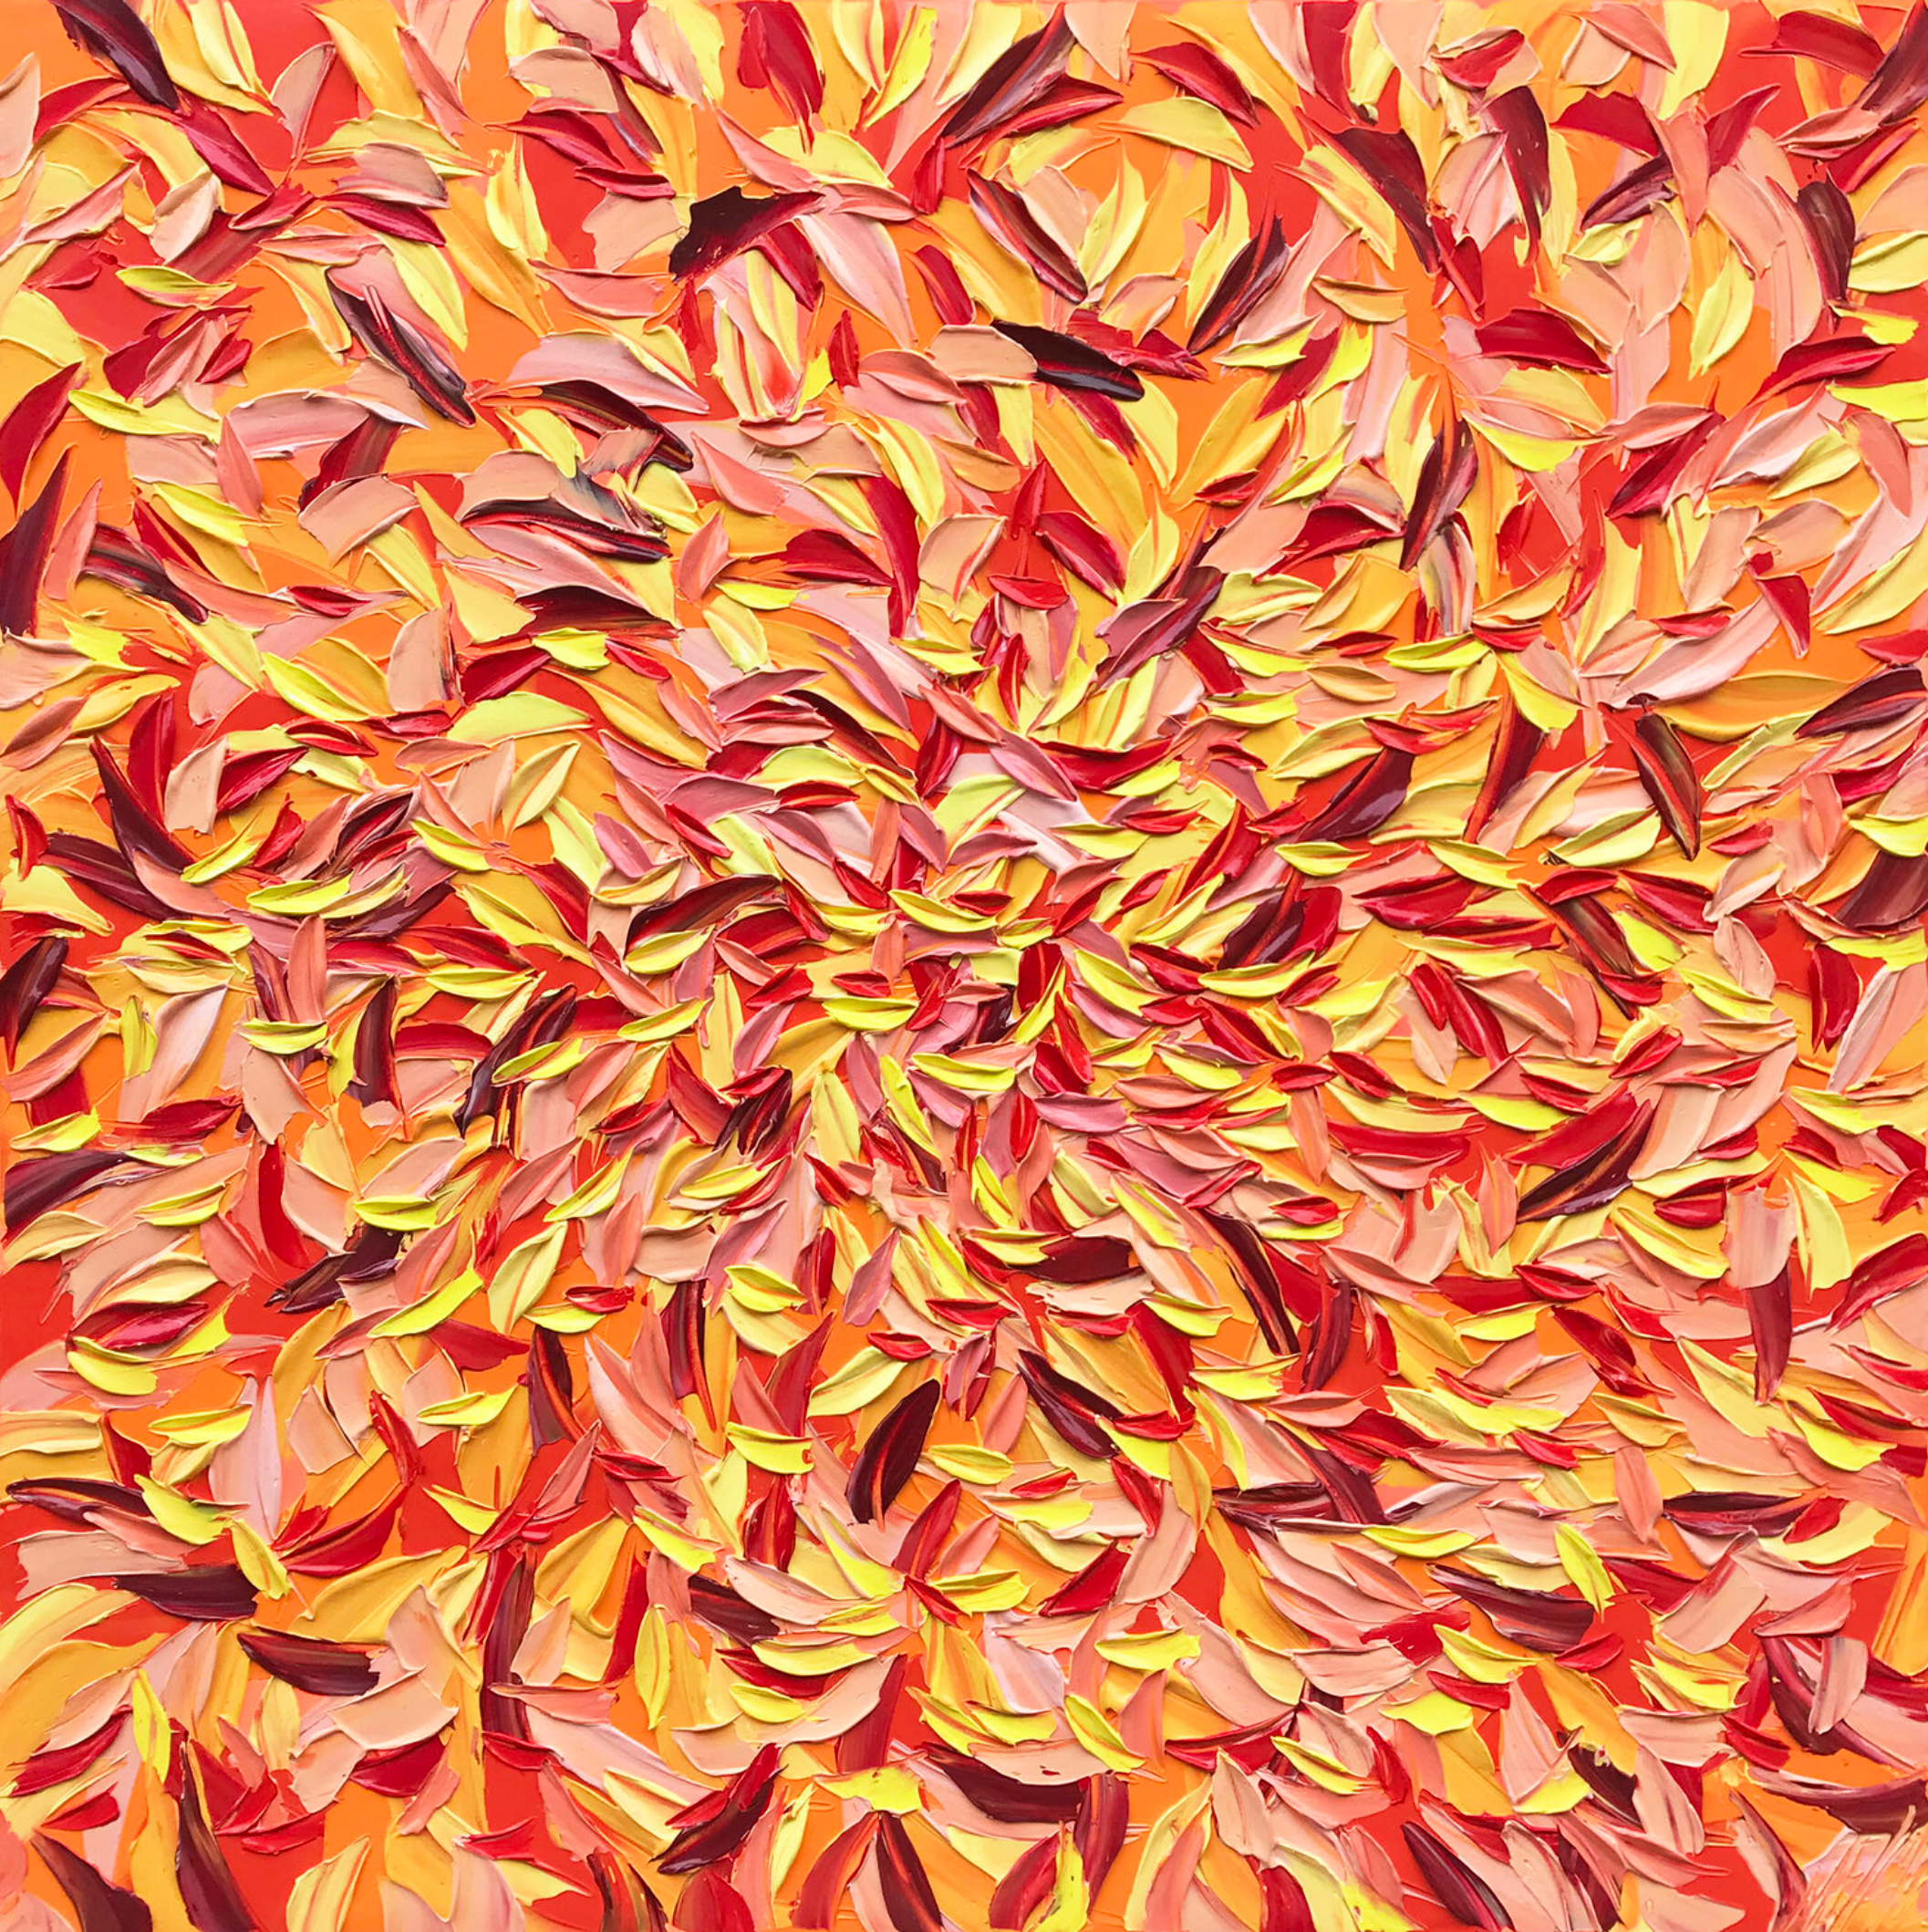 Oliver Messas "À la folie..." (A la locura) Cuadro abstracto de hojas de colores